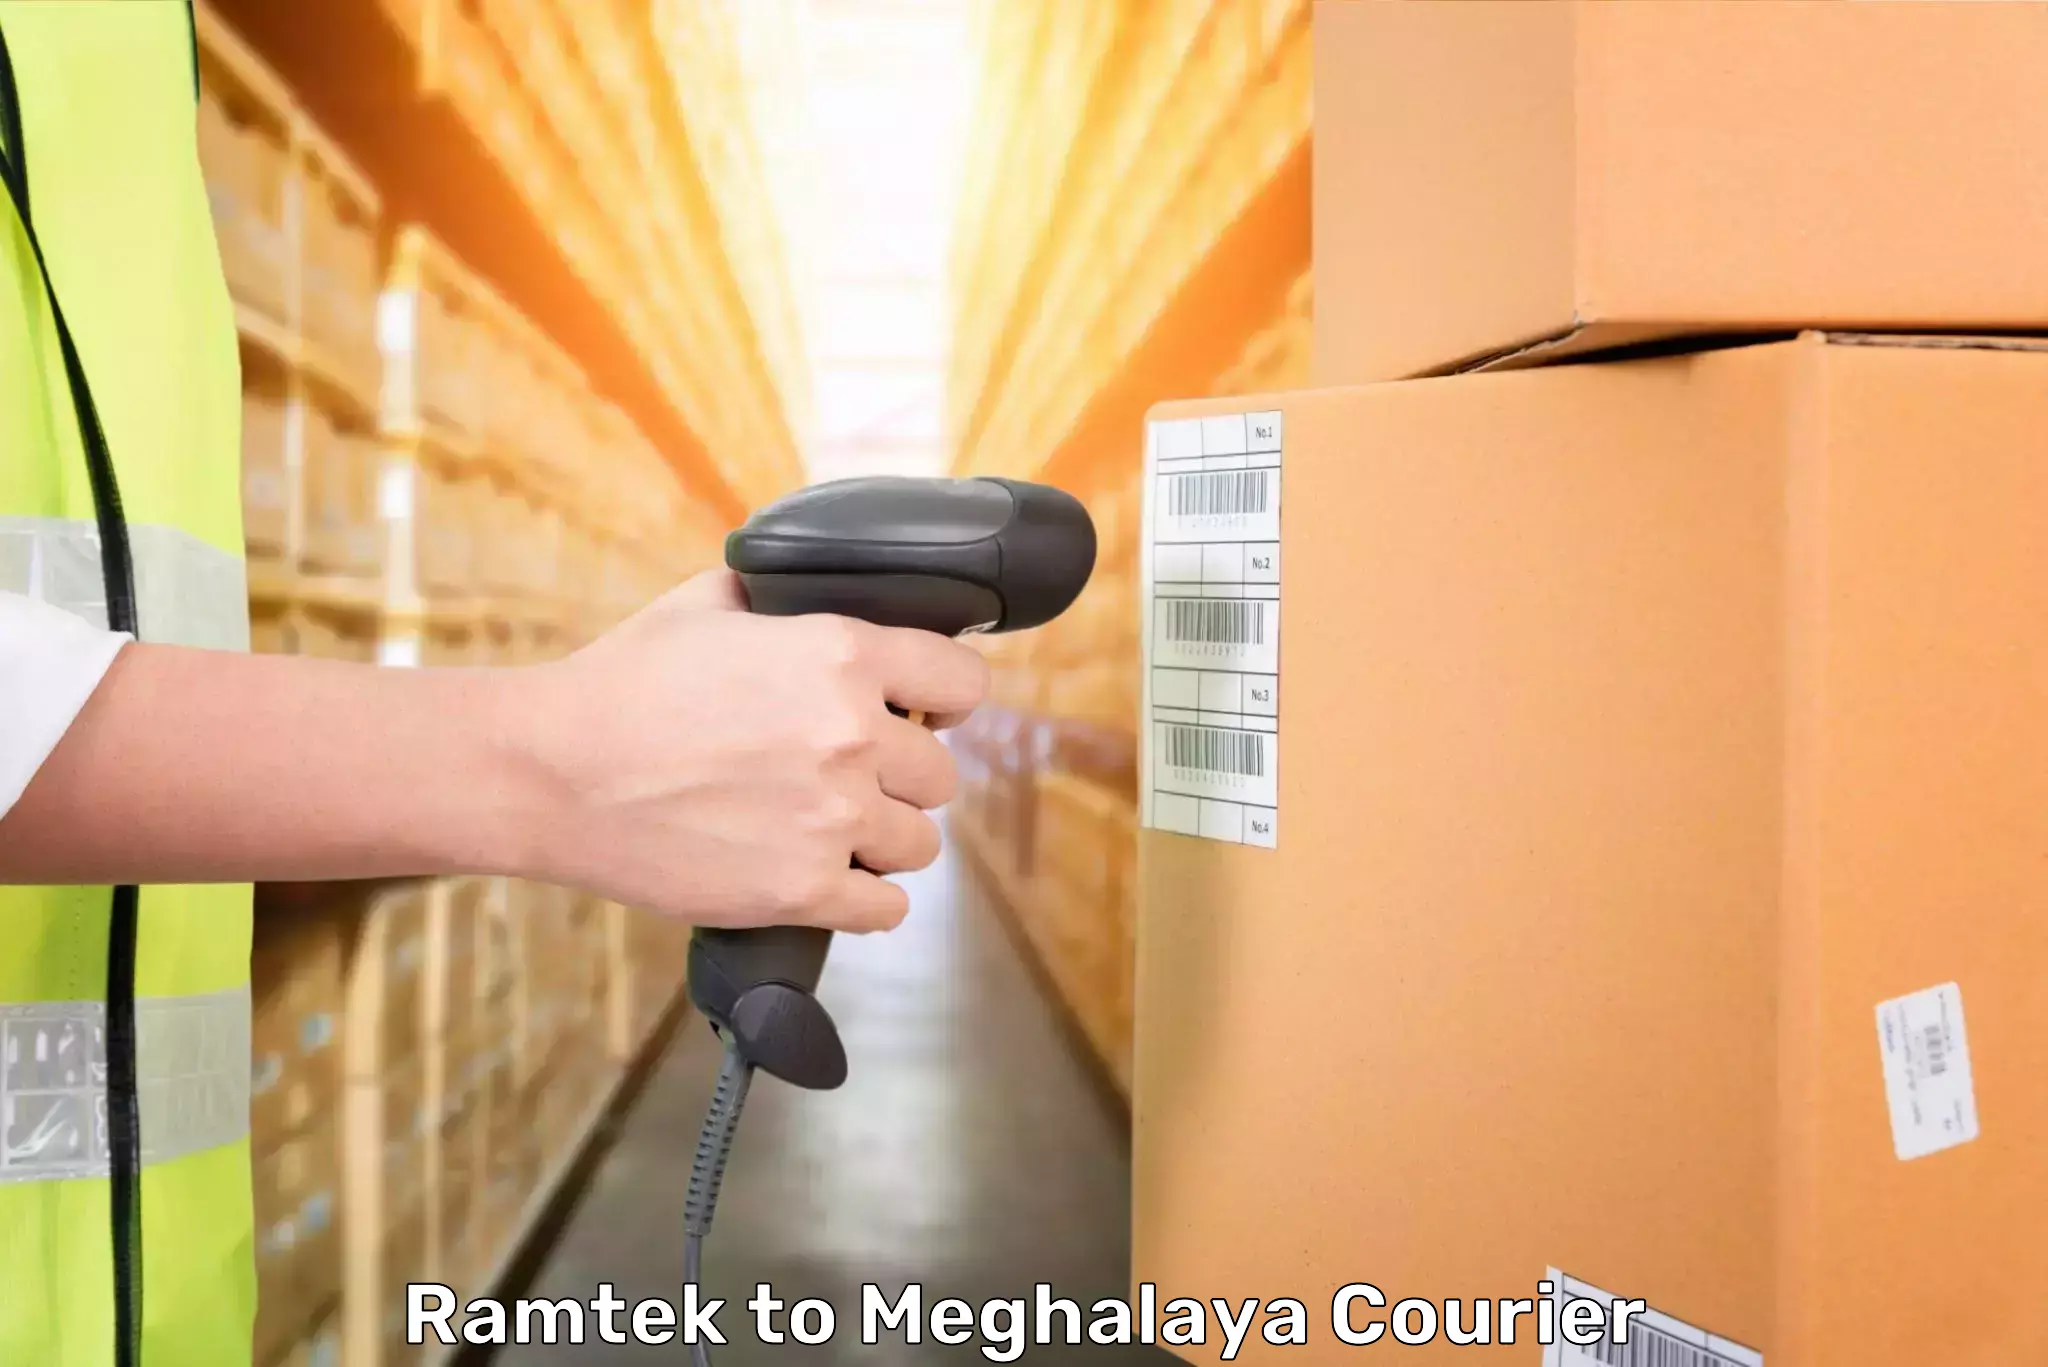 Luggage transport consultancy Ramtek to Meghalaya